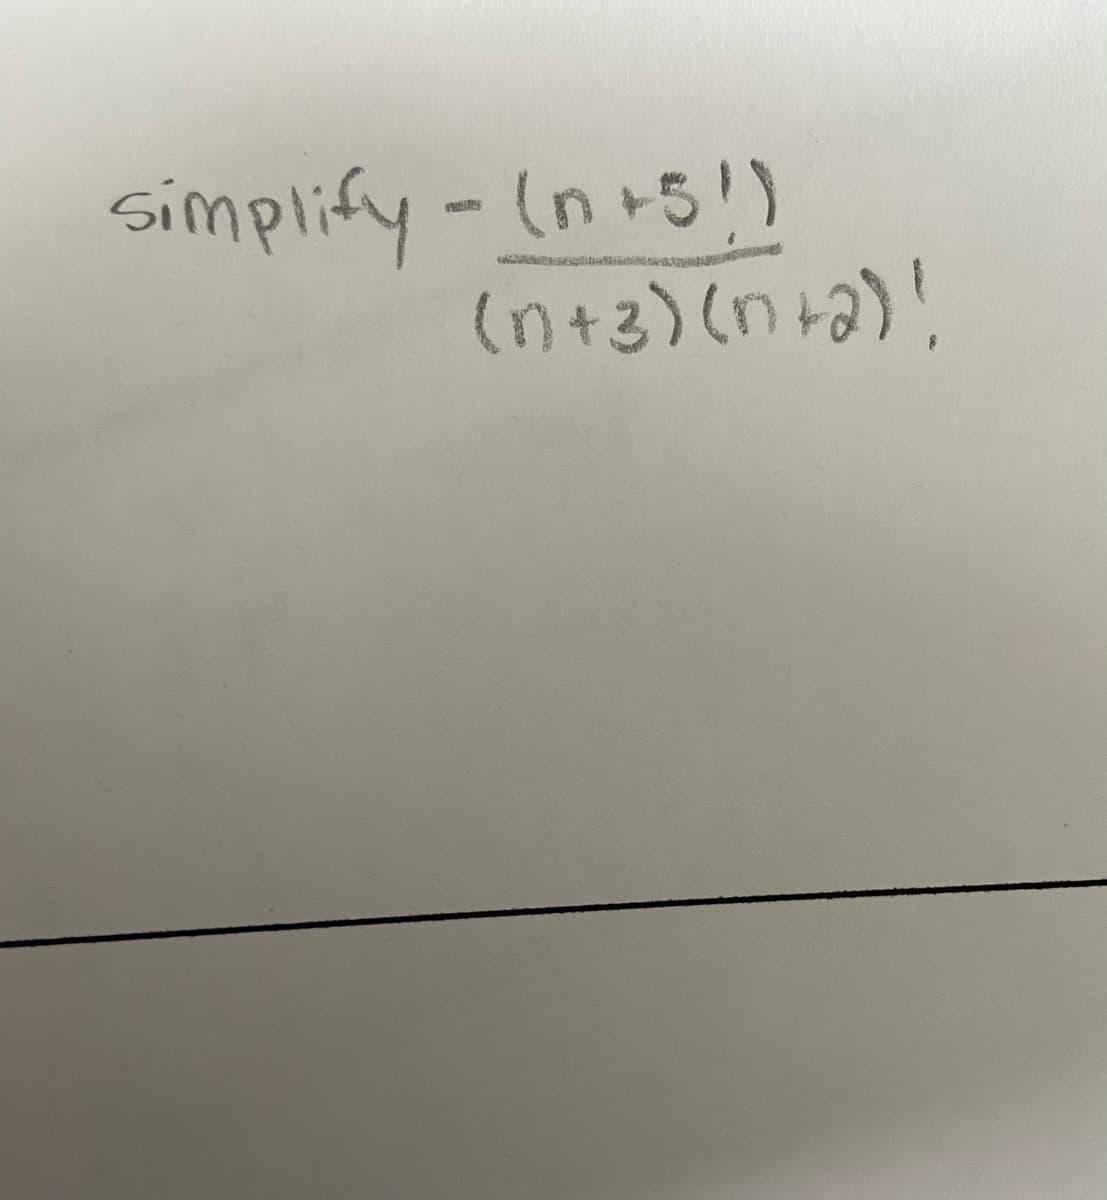 simplify-(n+5!)
(n+2) (n+a)!
